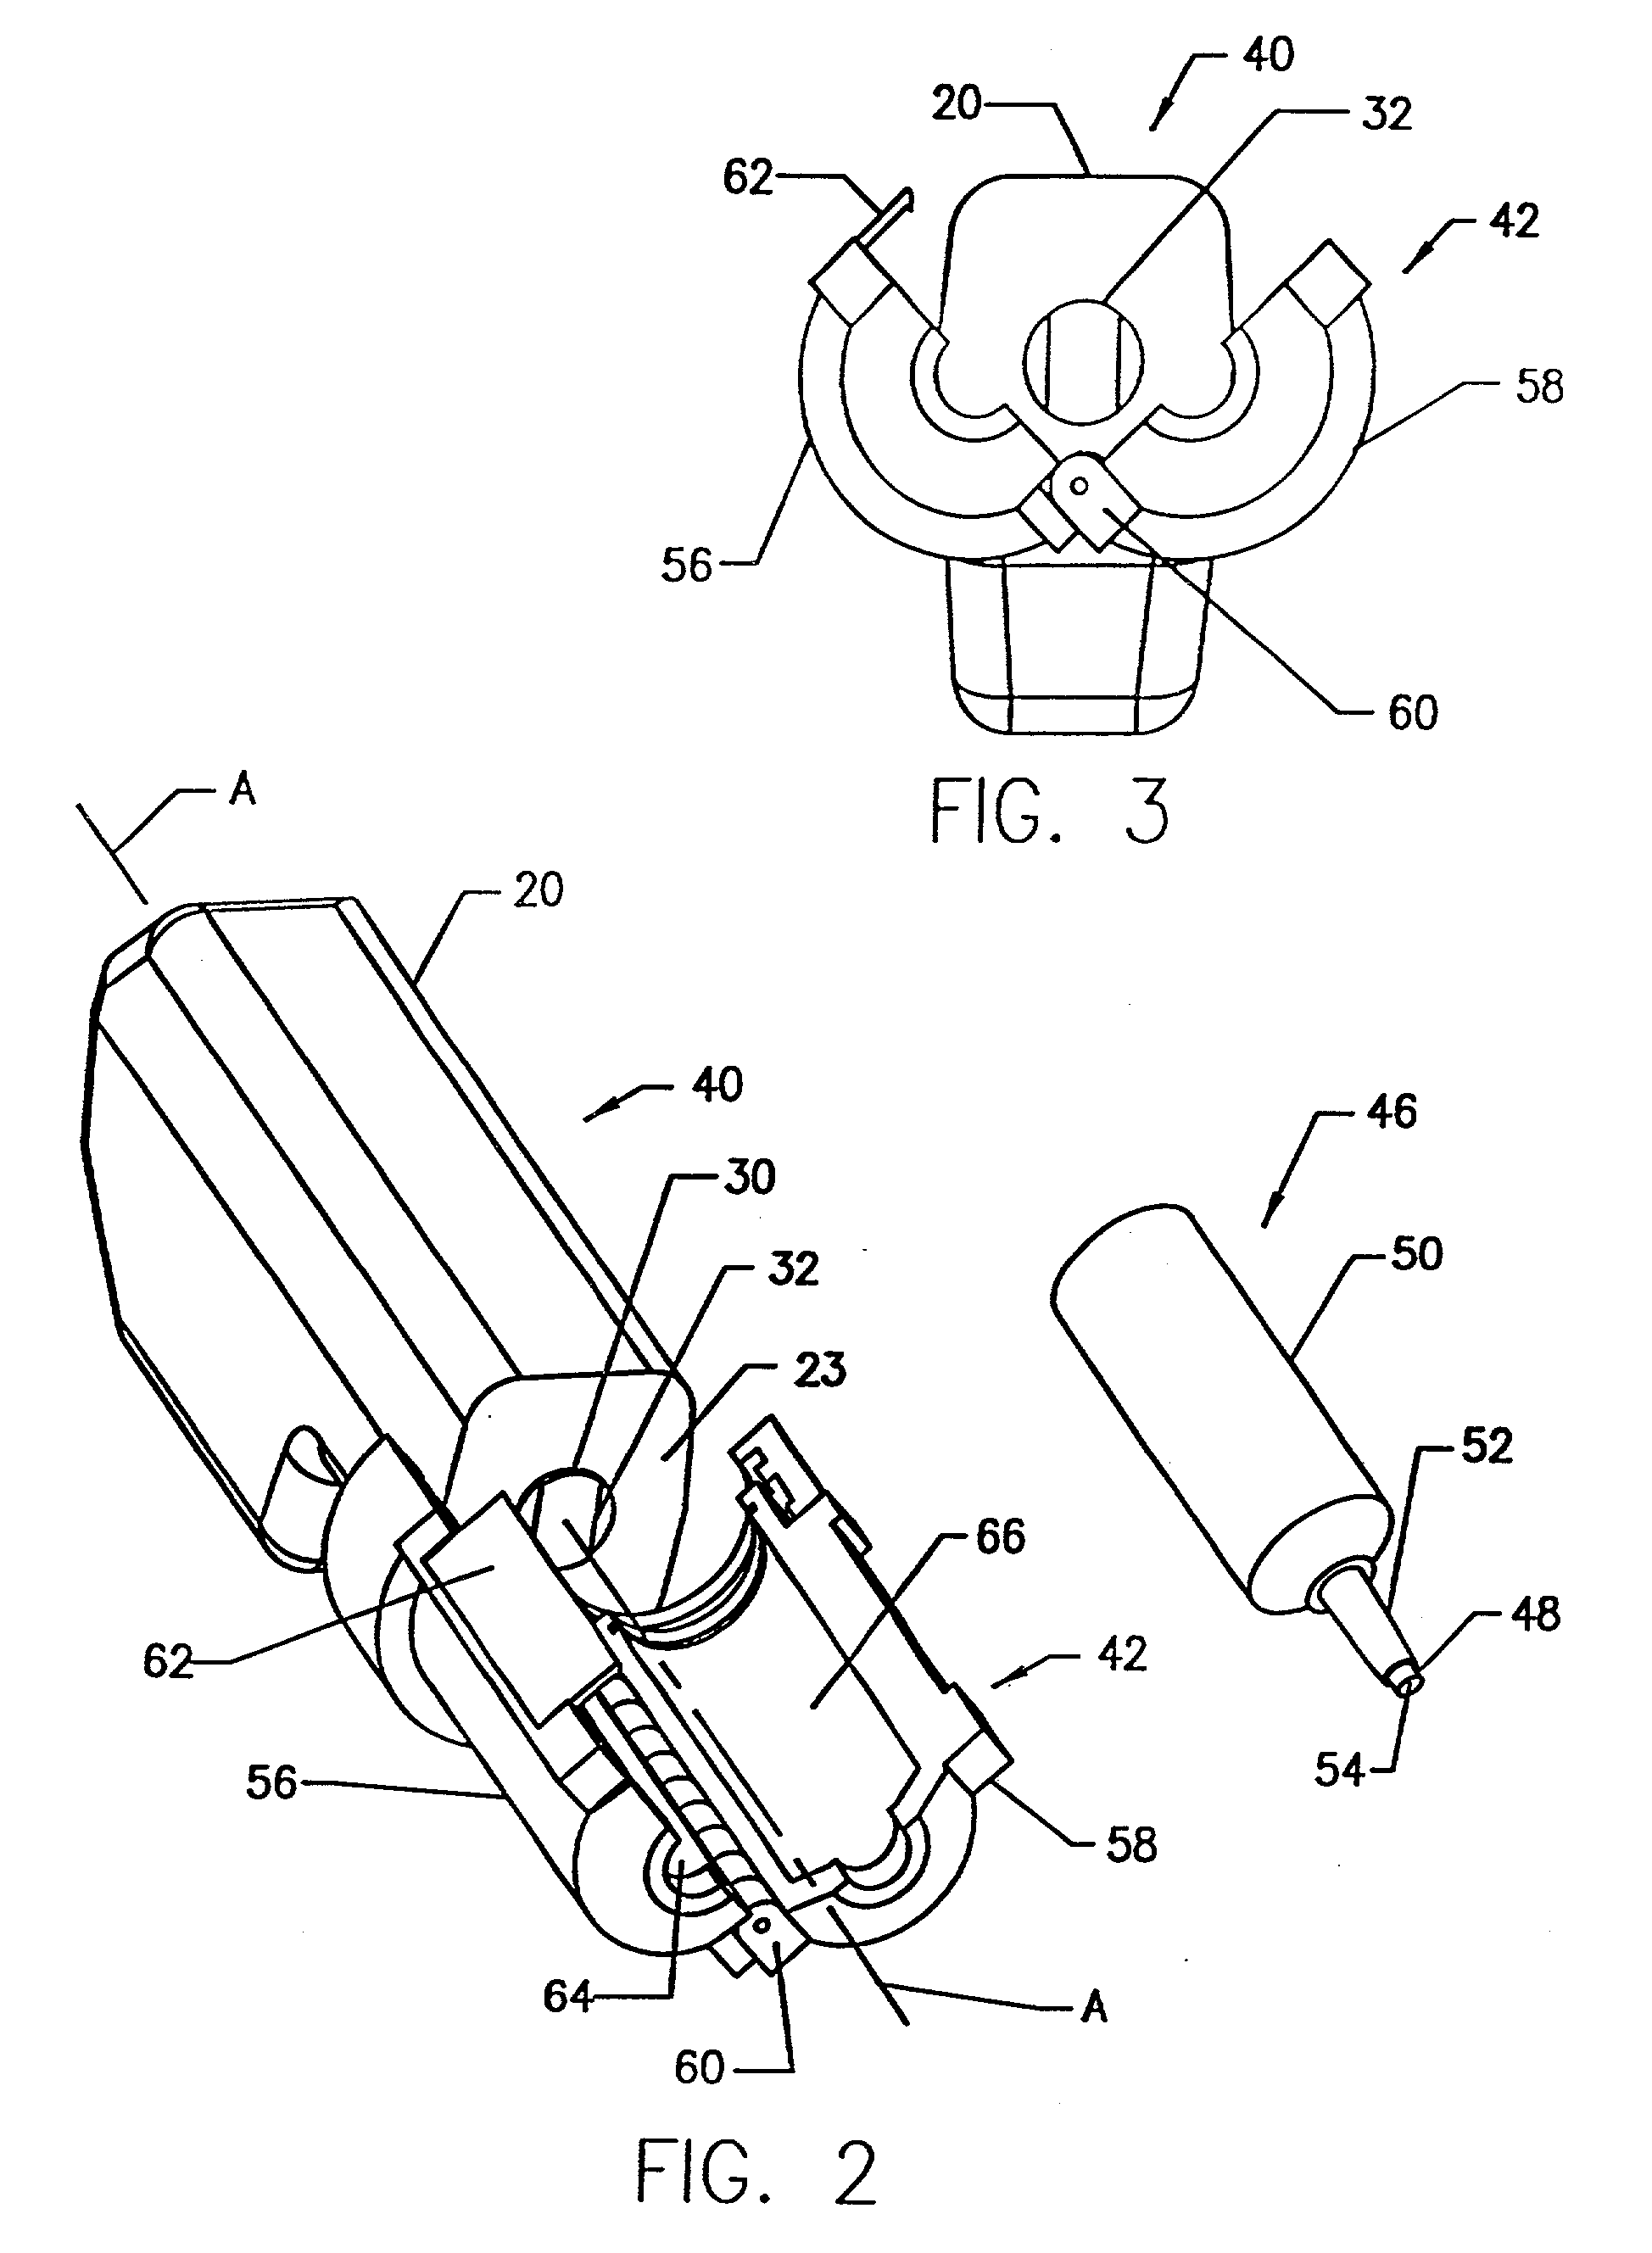 Front load pressure jacket system with syringe holder